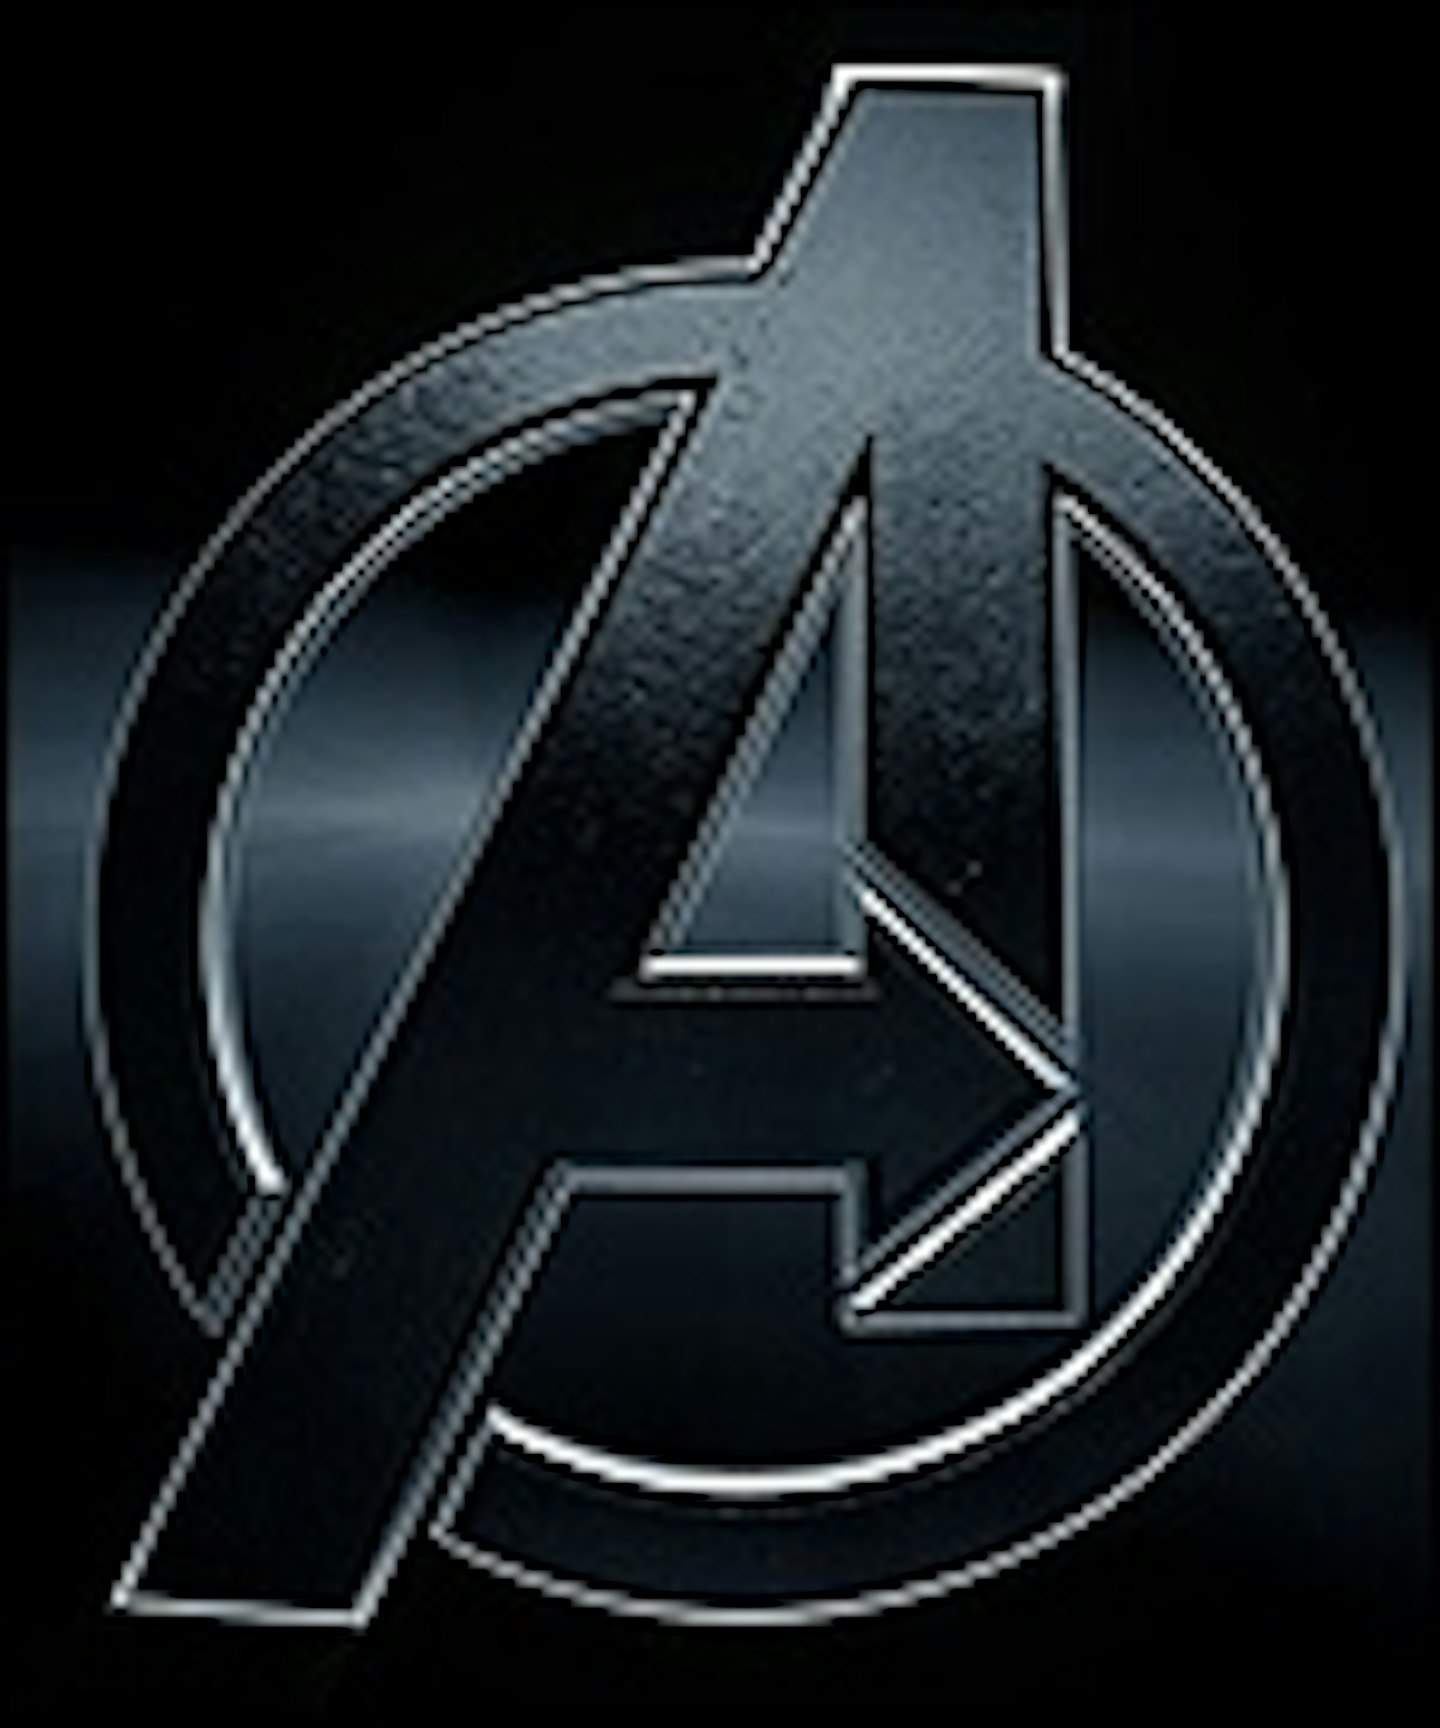 New Avengers Teaser Poster Arrives